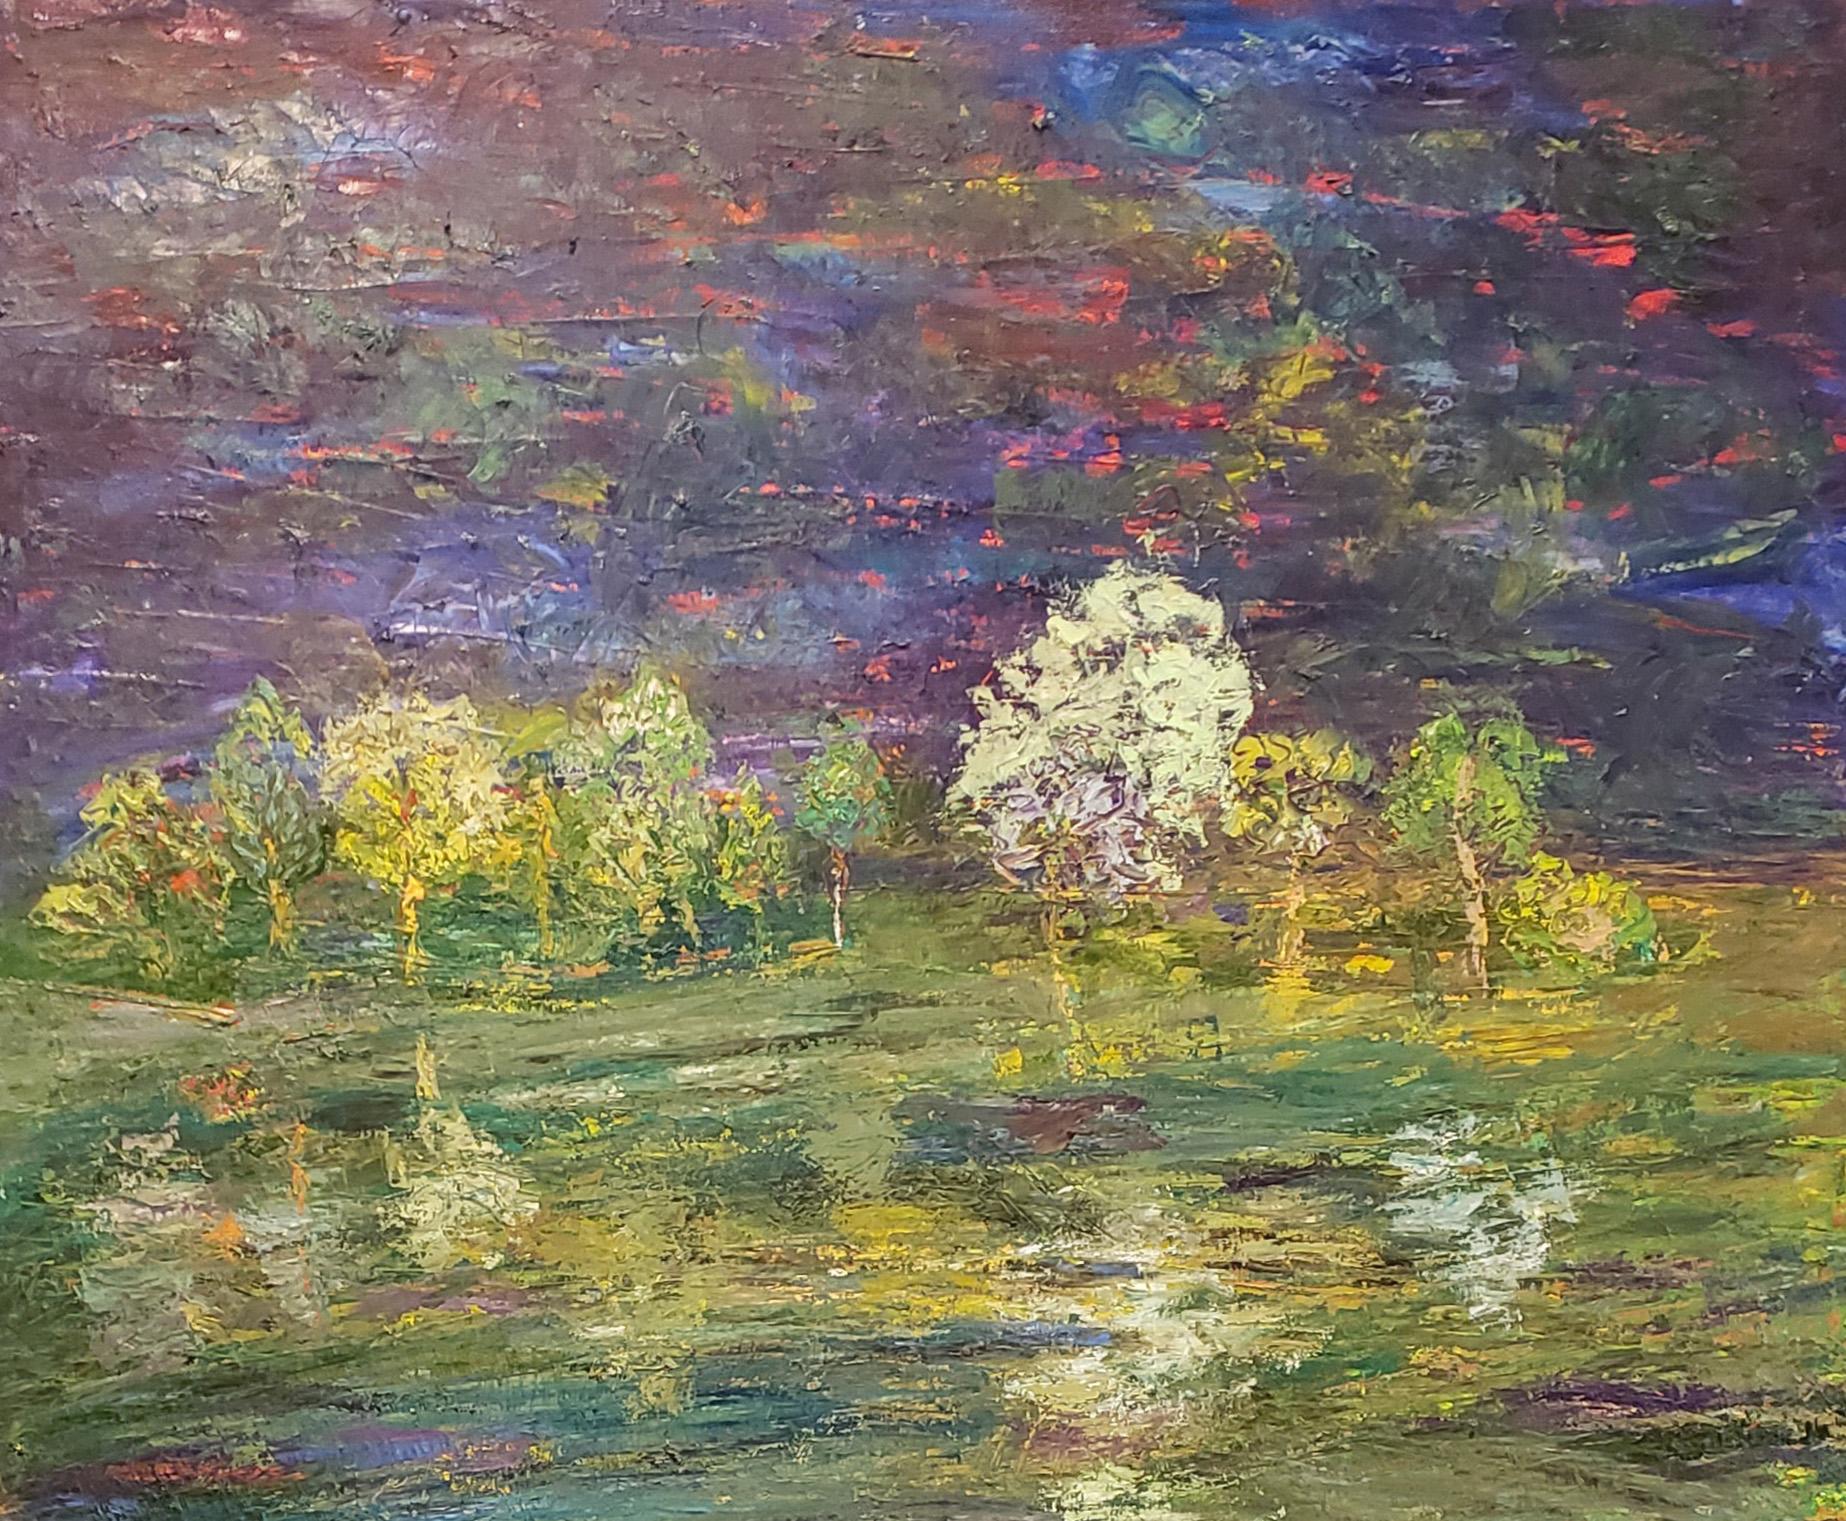 Nachtteich, zeitgenössisches strukturiertes impressionistisches Landschaftsgemälde – Painting von Marsha Heller